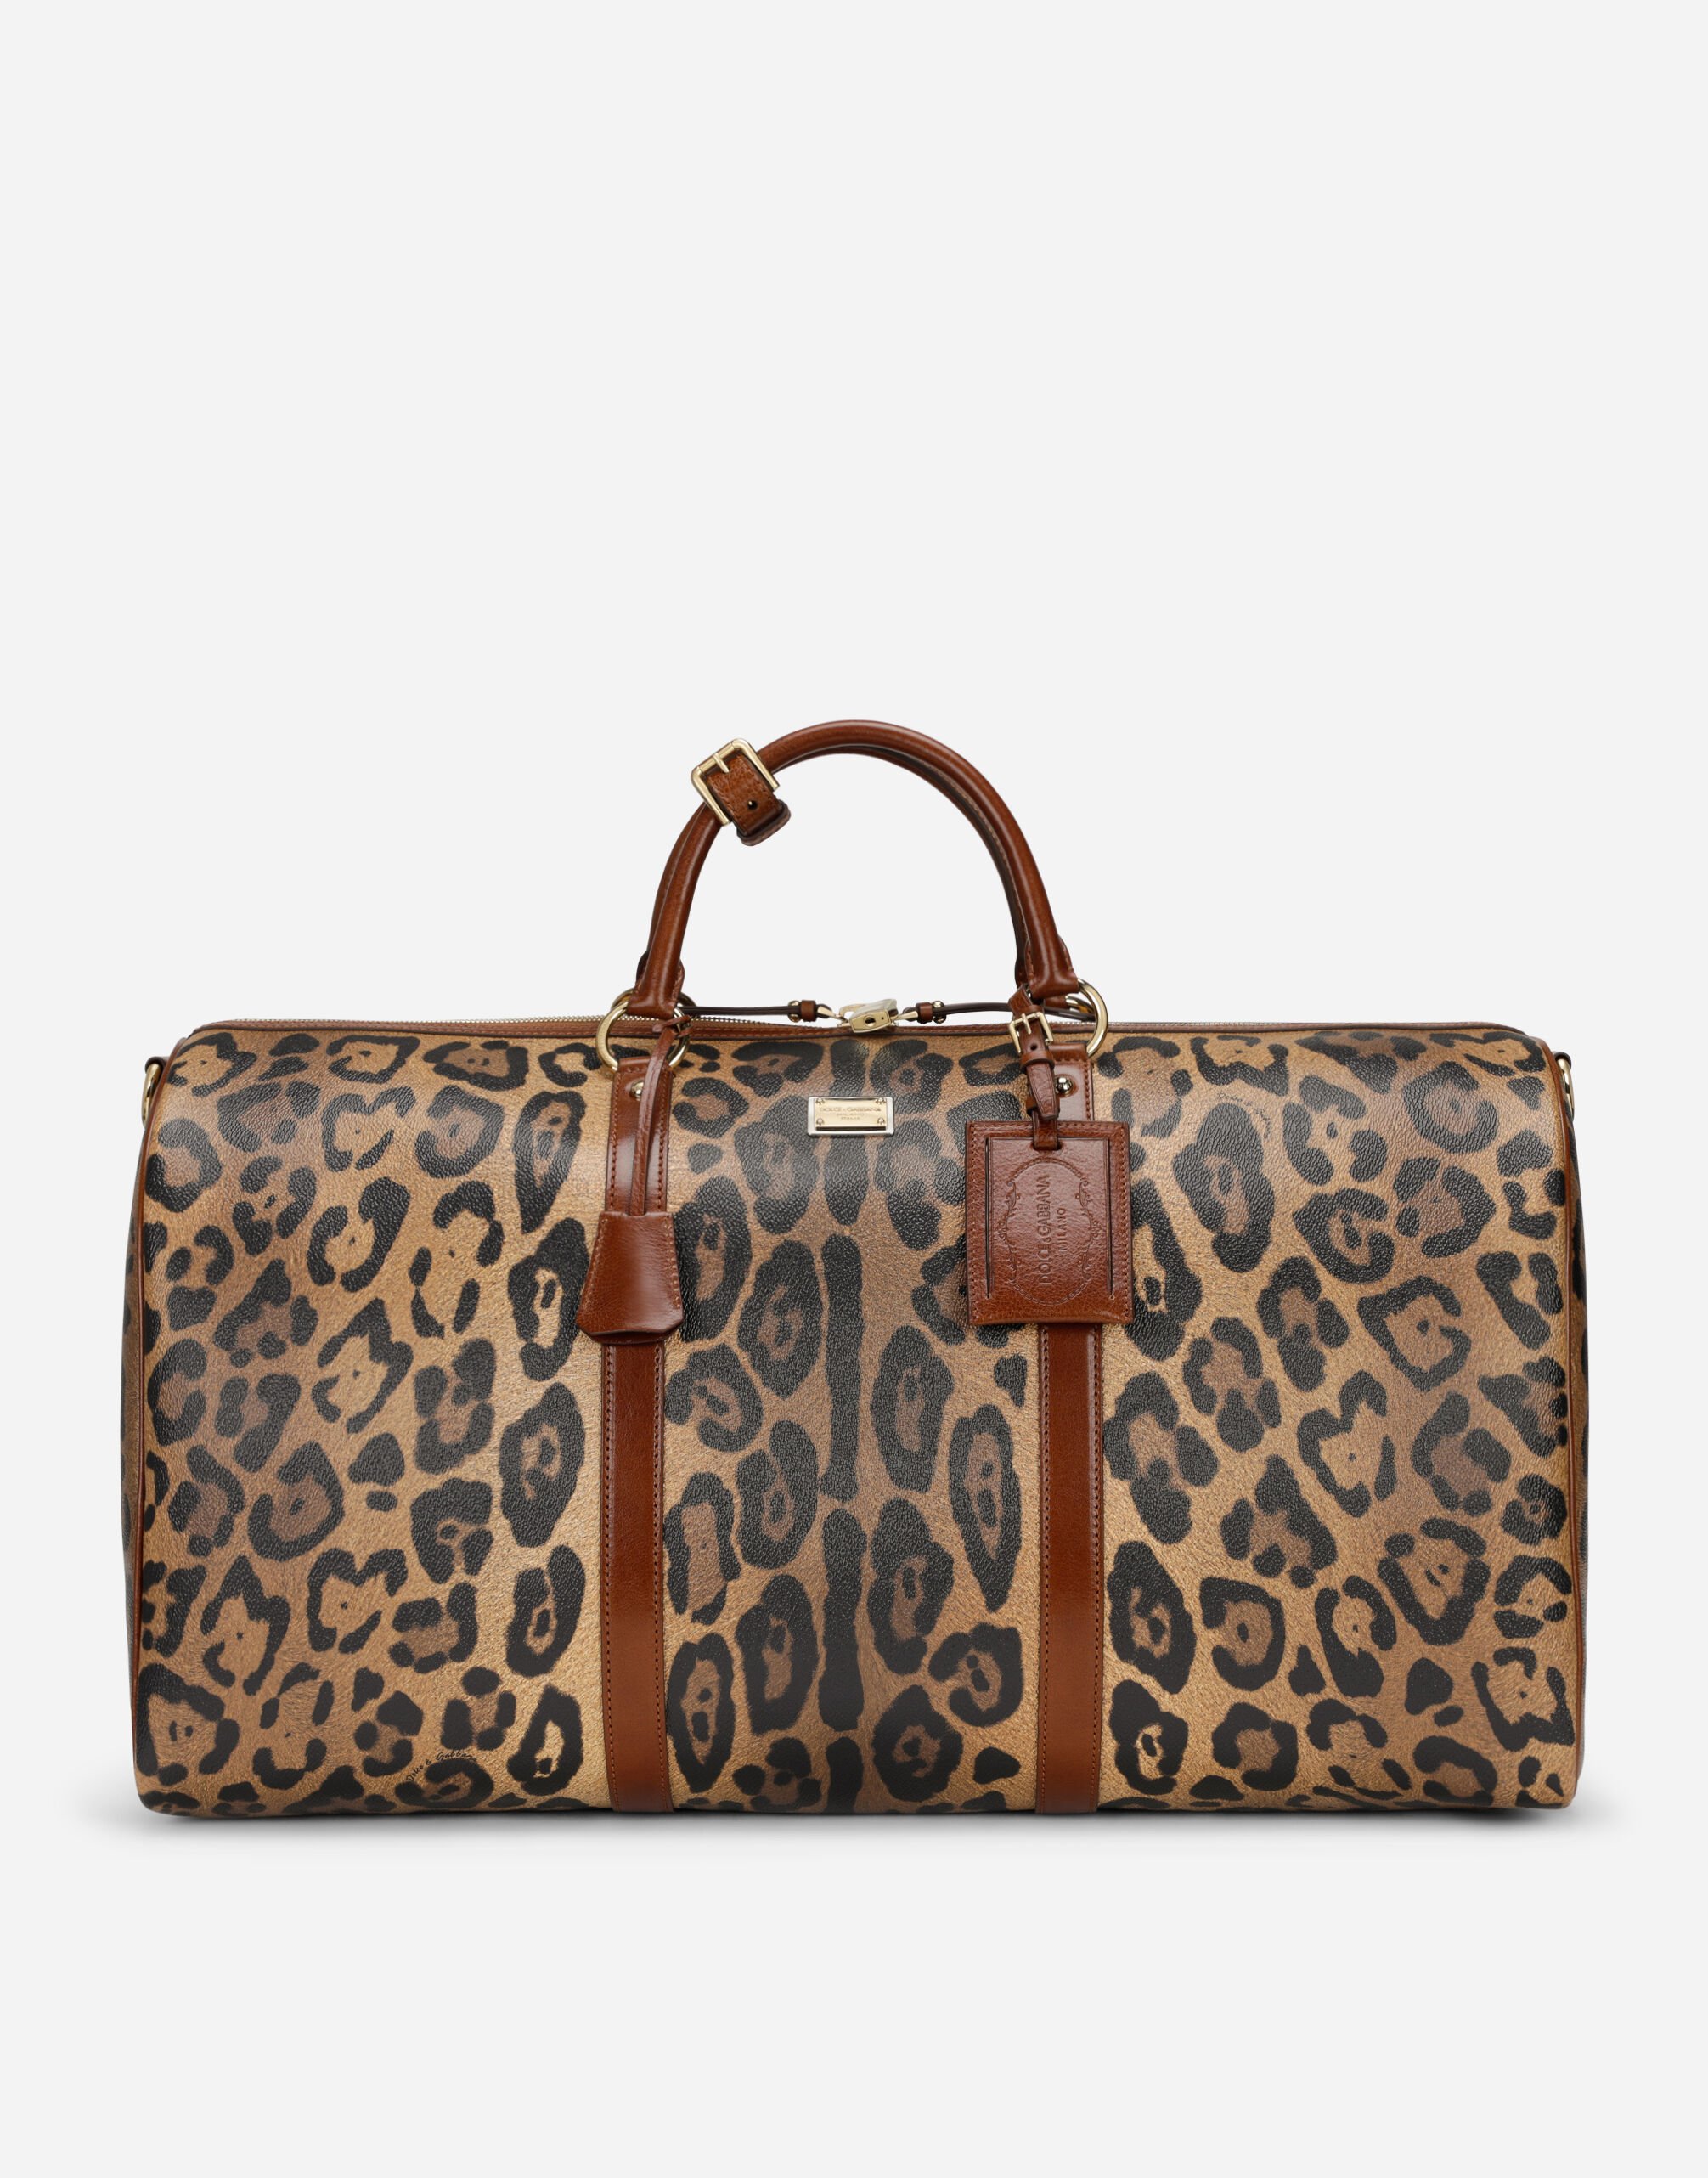 Dolce & Gabbana حقيبة سفر متوسطة كريسبو بطبعة فهد وبطاقة موسومة متعدد الألوان BB2206AW384